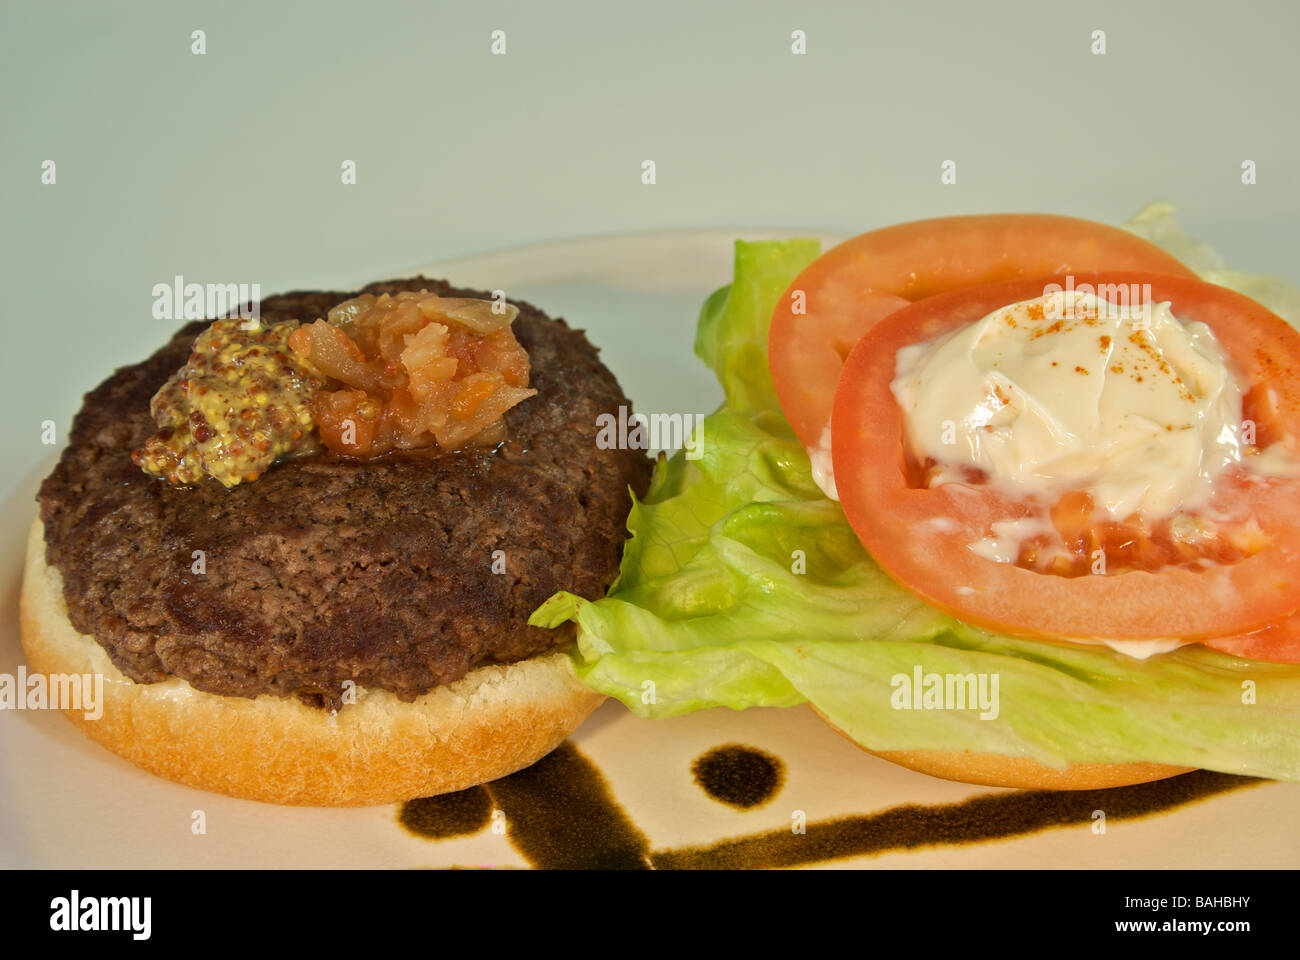 Deluxe hamburger lettuce tomato relish mustard mayonnaise on a bun Stock Photo